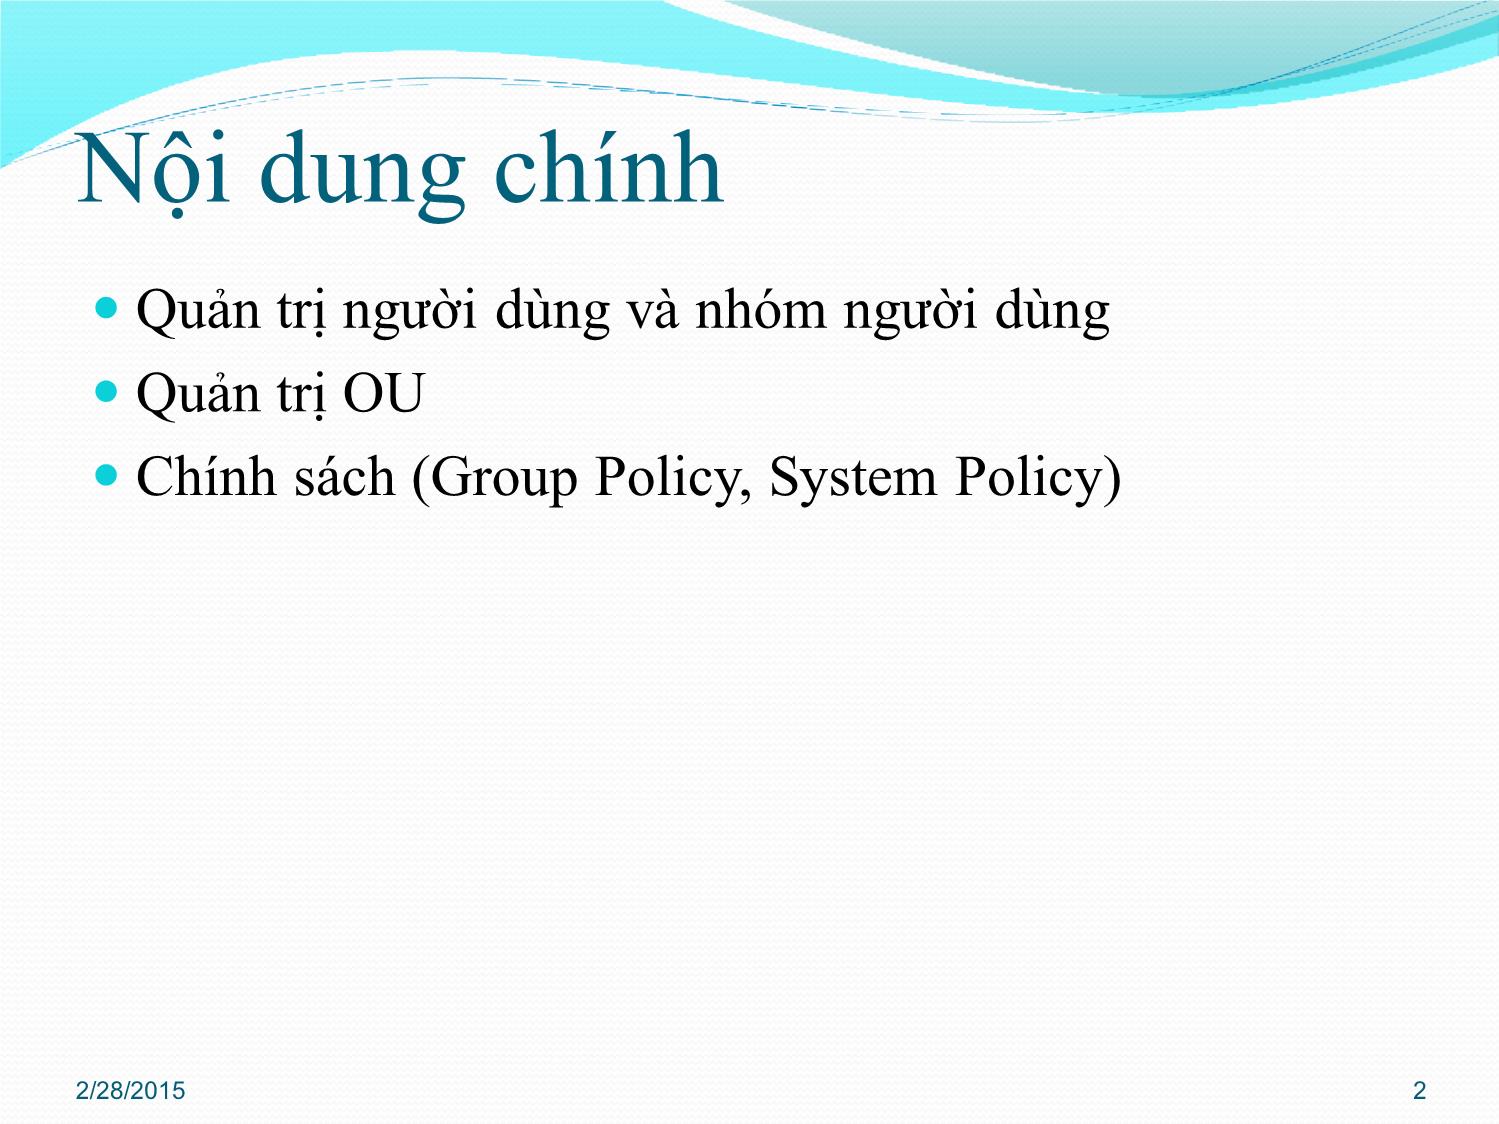 Bài giảng Quản trị mạng - Chương 3: Quản trị Active Directory - Phan Thị Thu Hồng trang 2